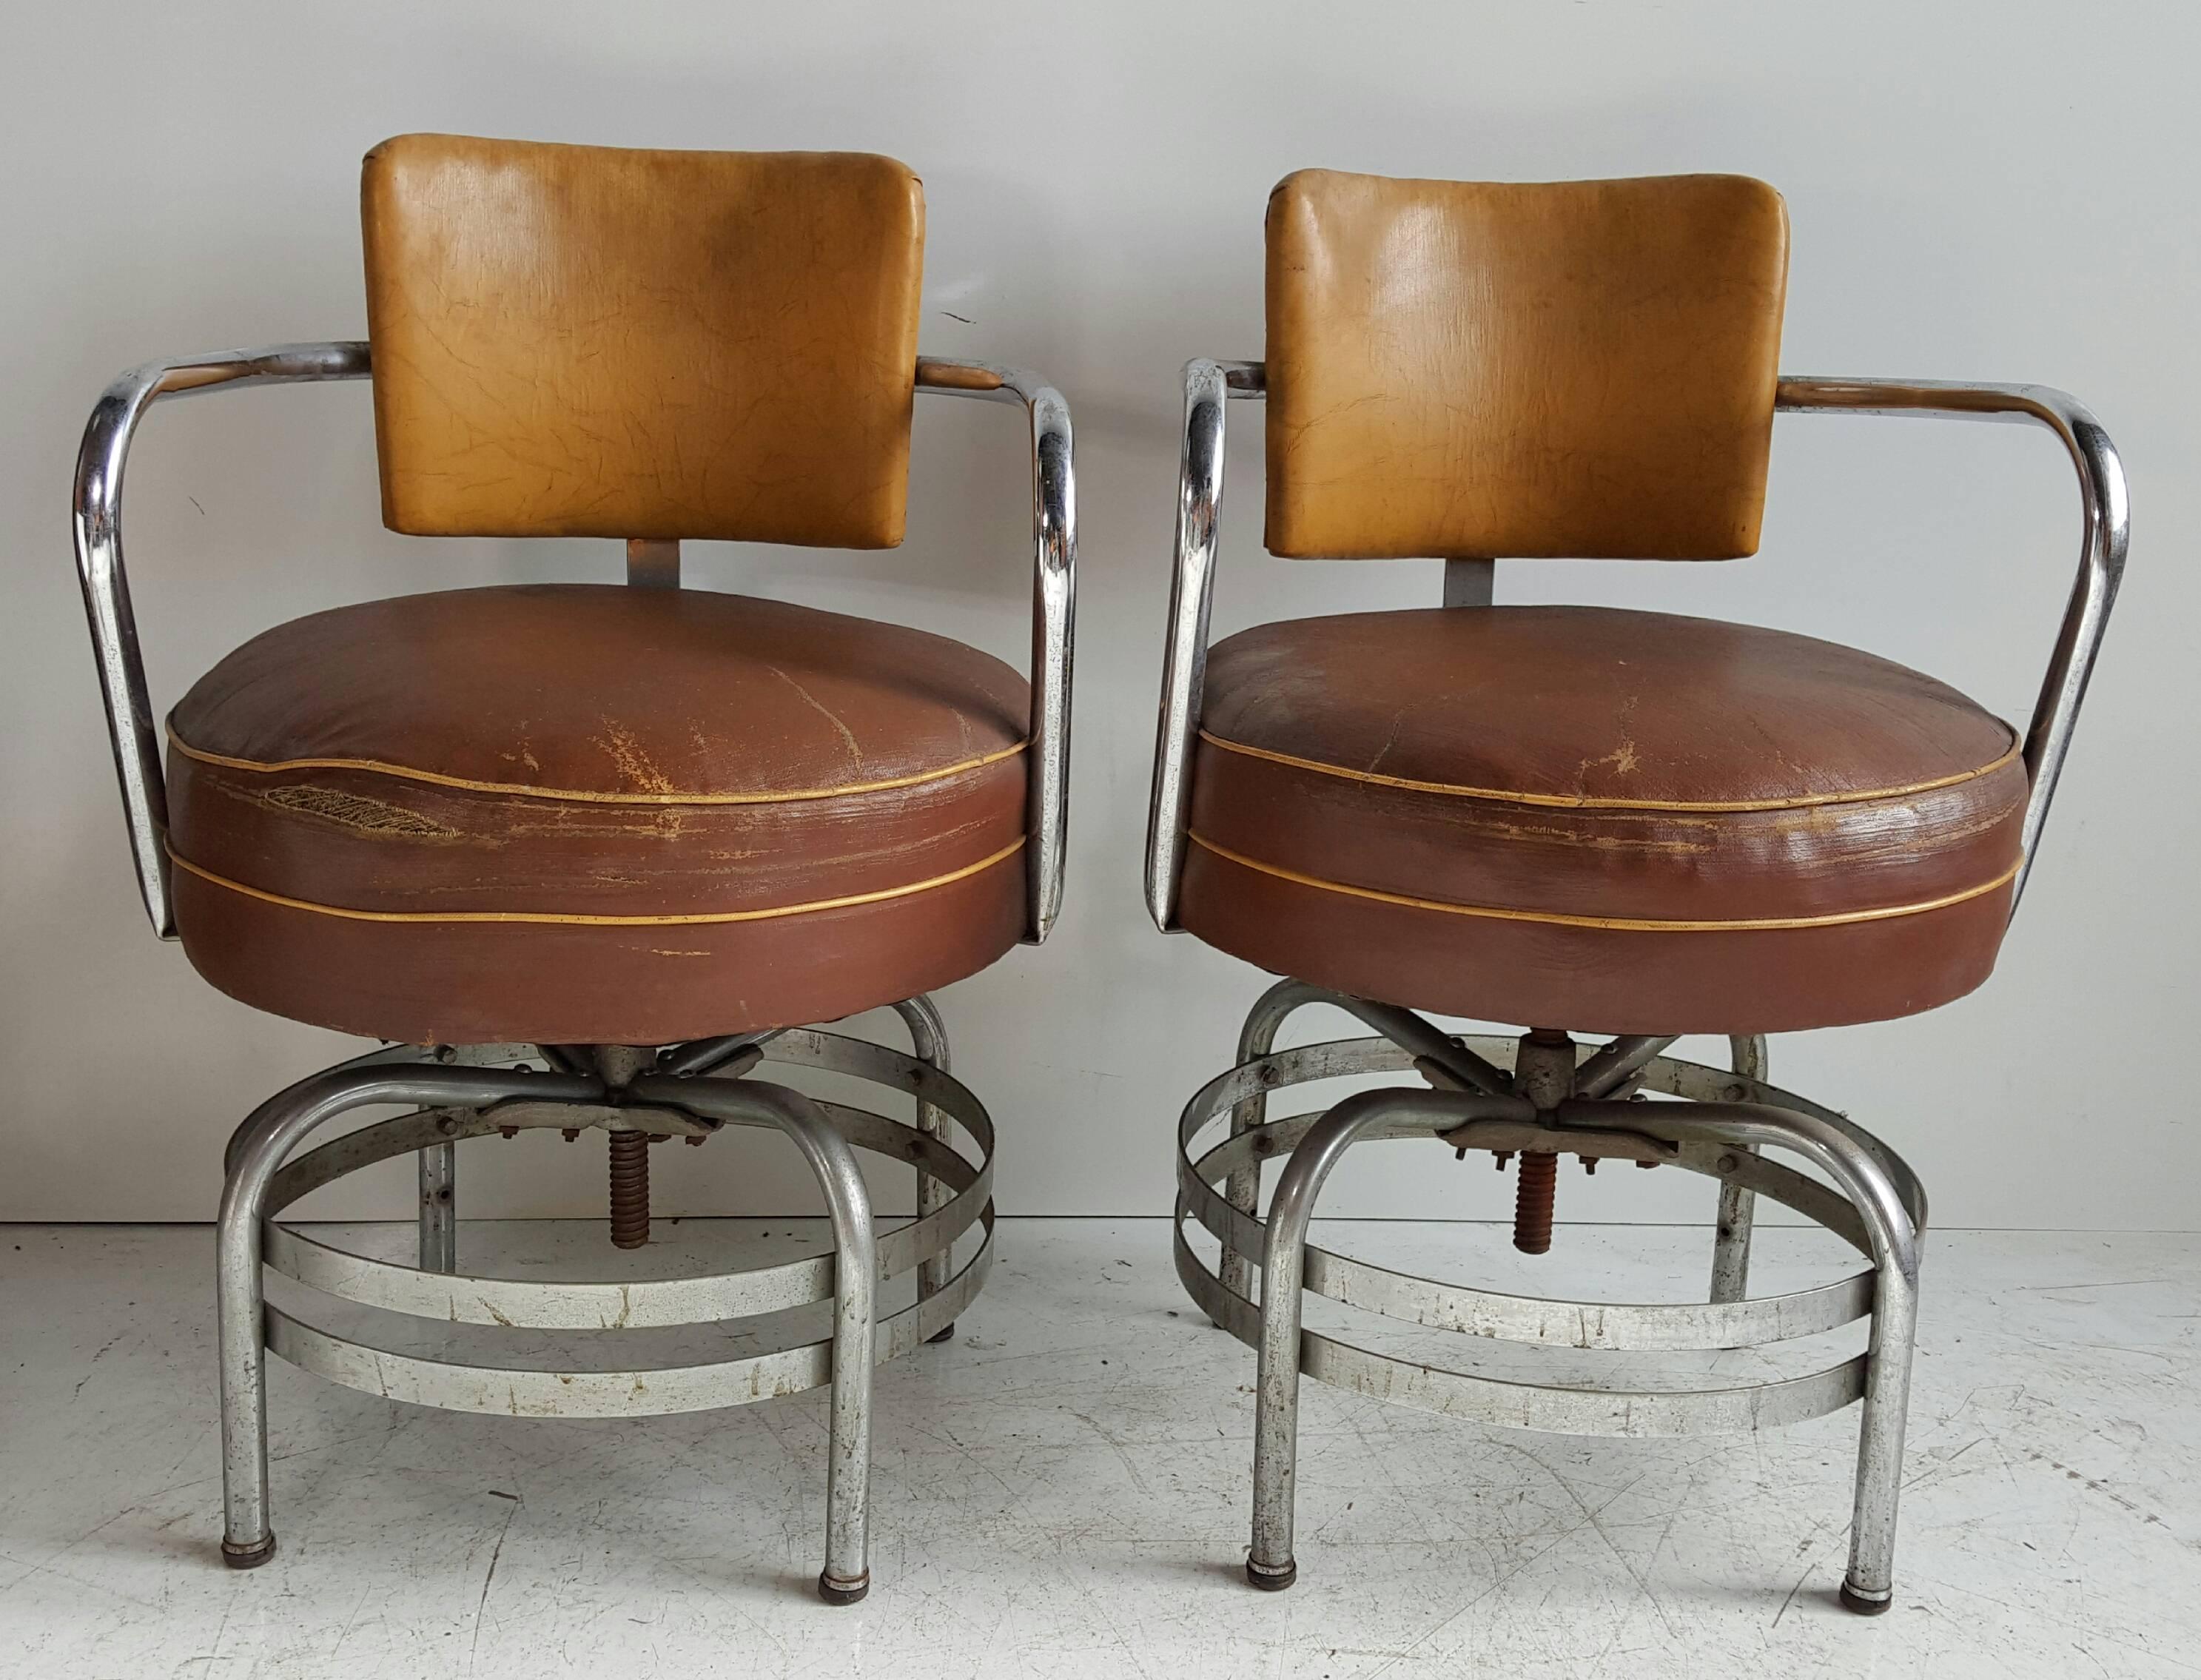 Klassische 1930er Jahre American Art Deco / Machine Age rohrförmigen Chrom Drehsessel, erstaunliche Form, Patina, alle original, behalten ursprünglichen Öl Tuch runden Sitze, passen nahtlos in deco, modern, zeitgenössisch, eklektisch Umwelt.